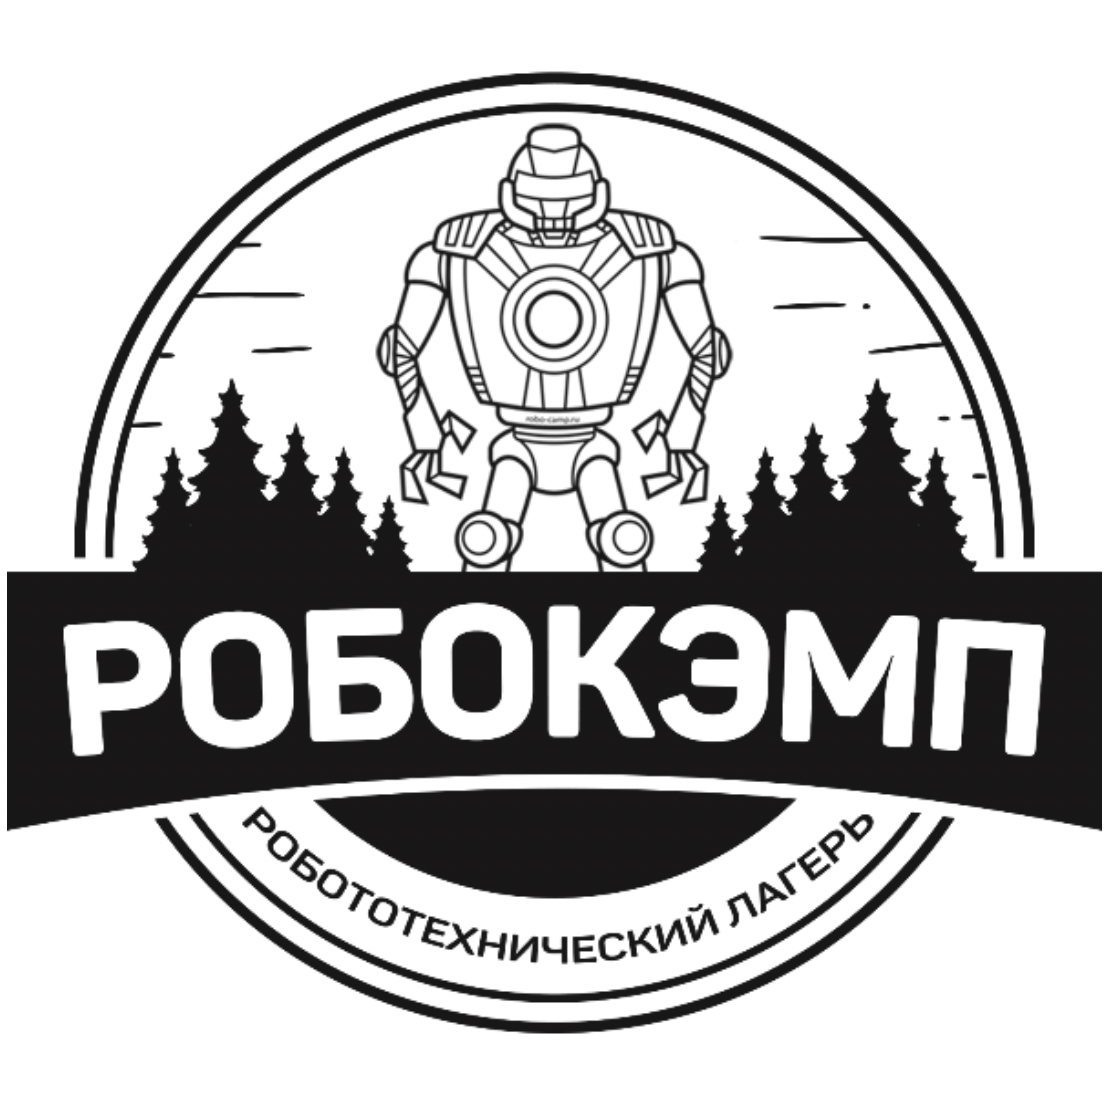 Родительский портал - Детский робототехнический лагерь "Робокэмп"